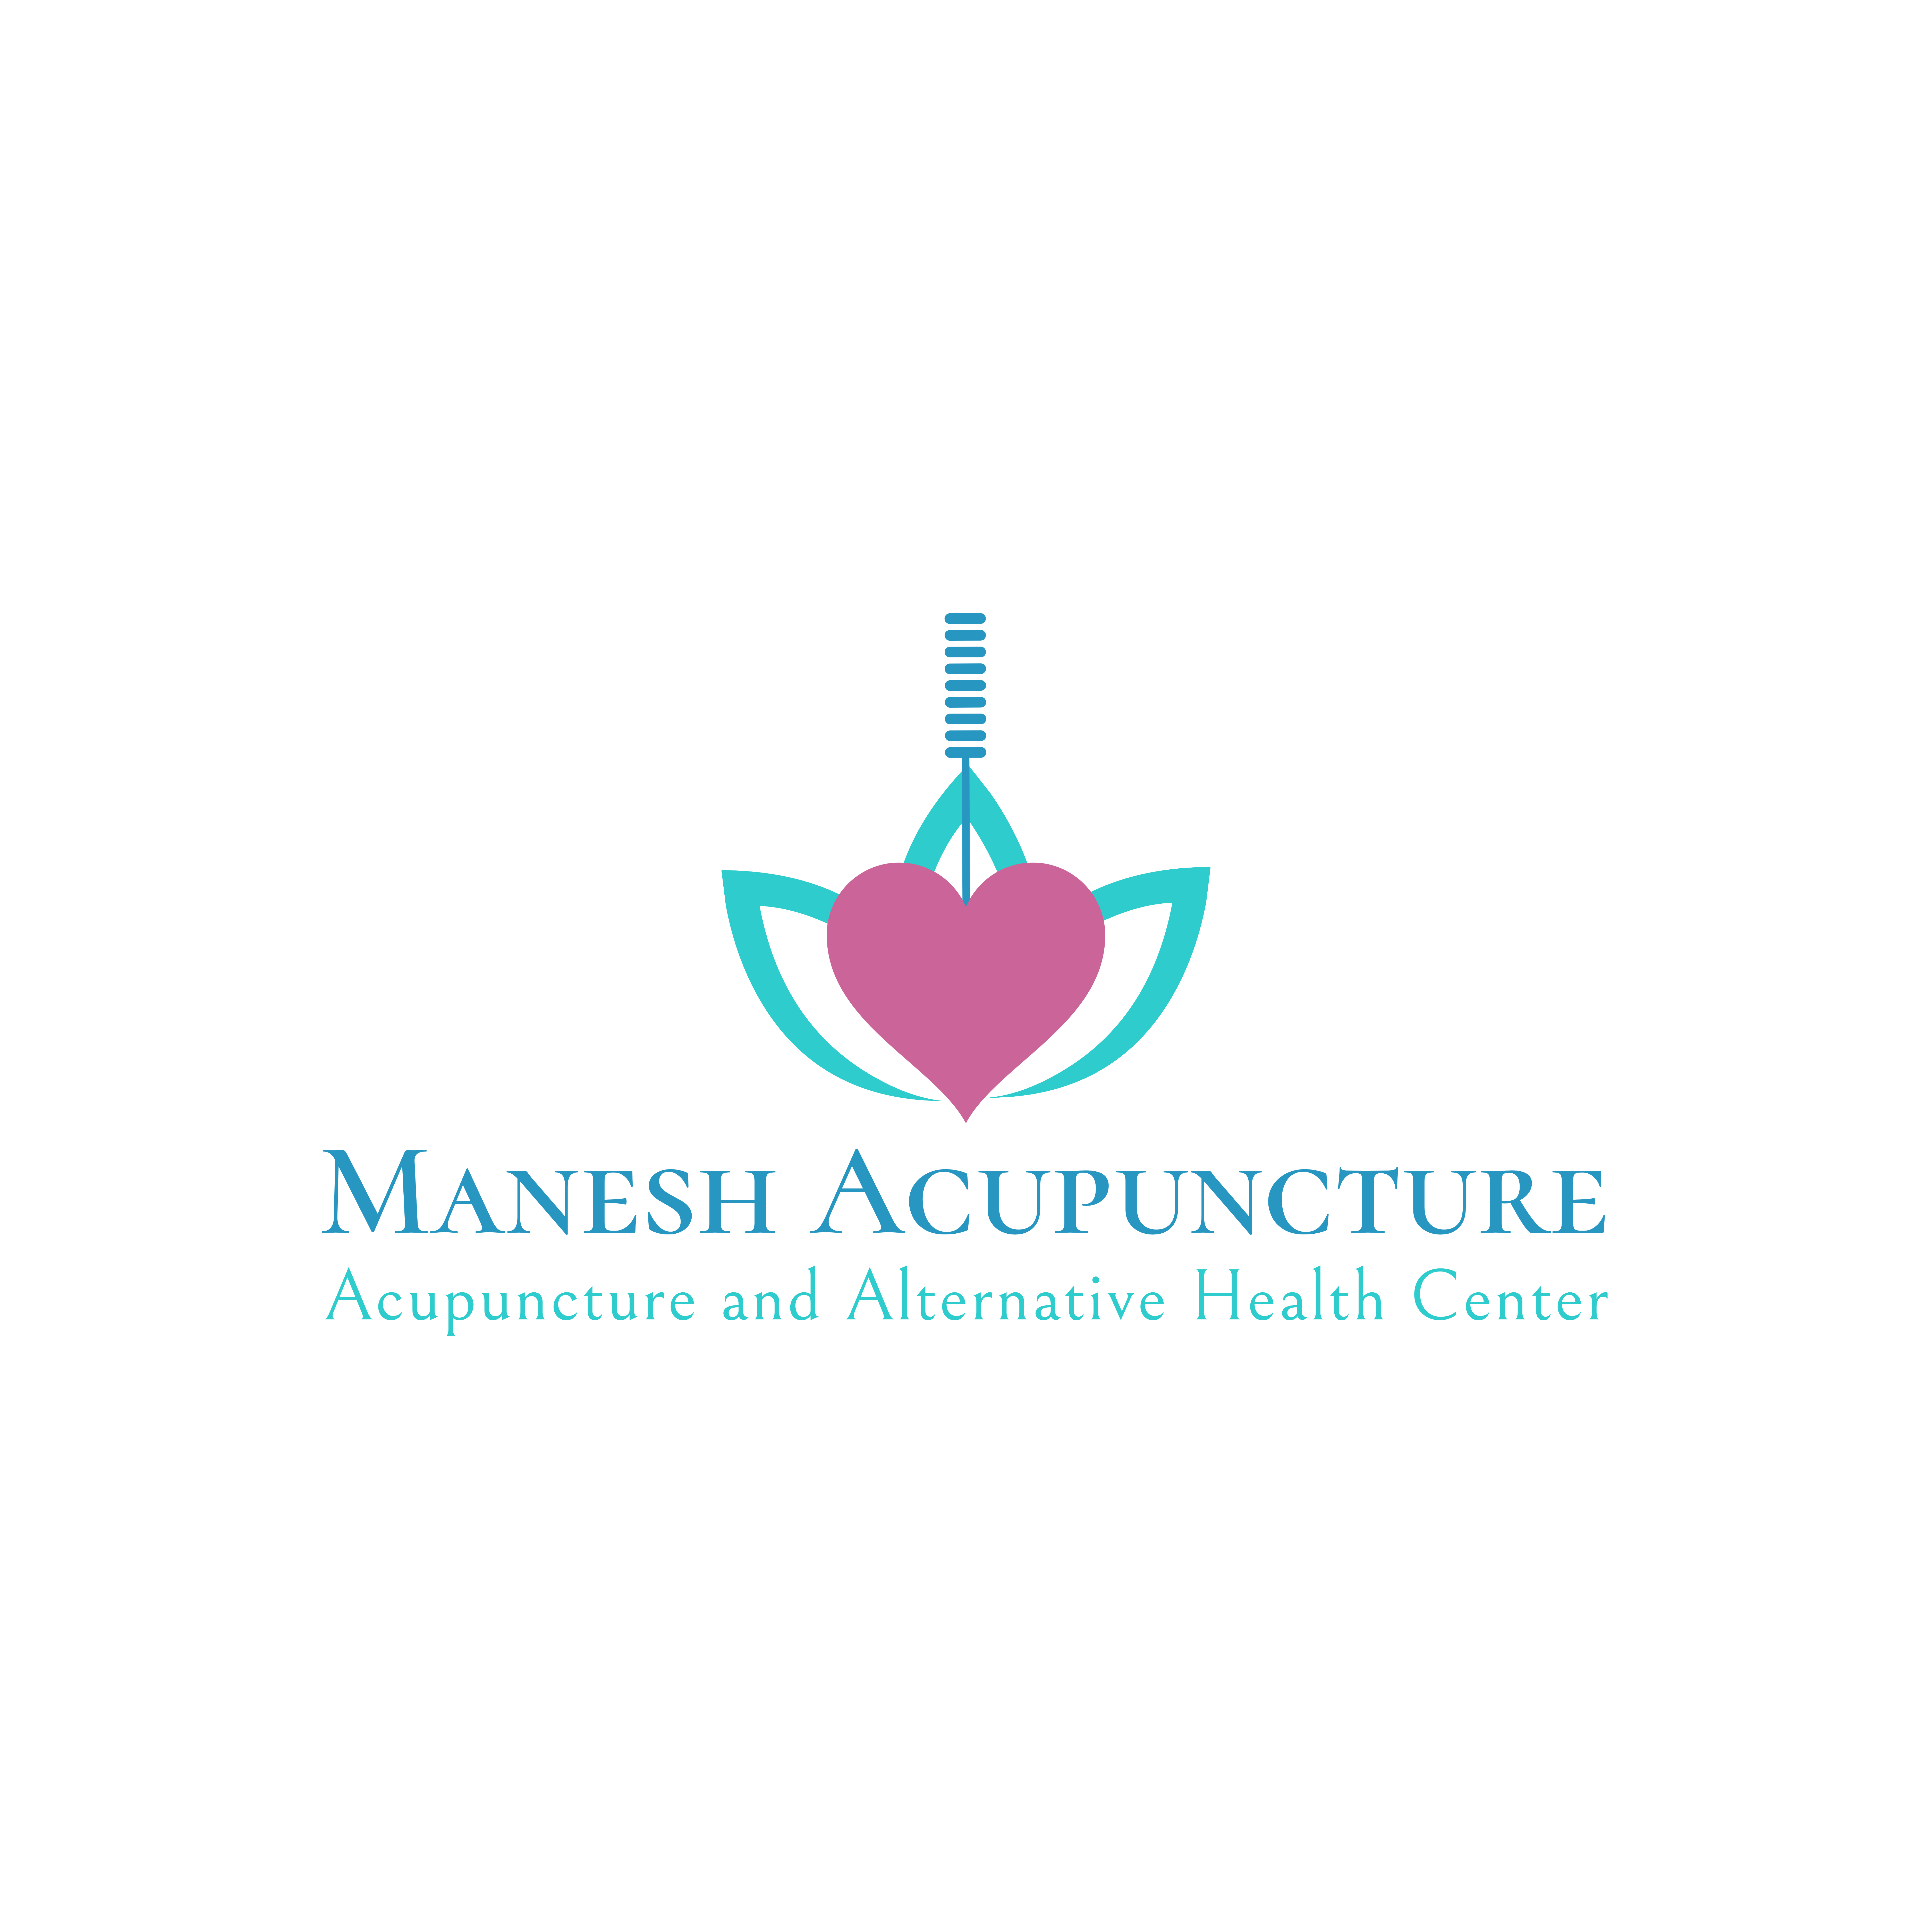 Manesh Acupuncture